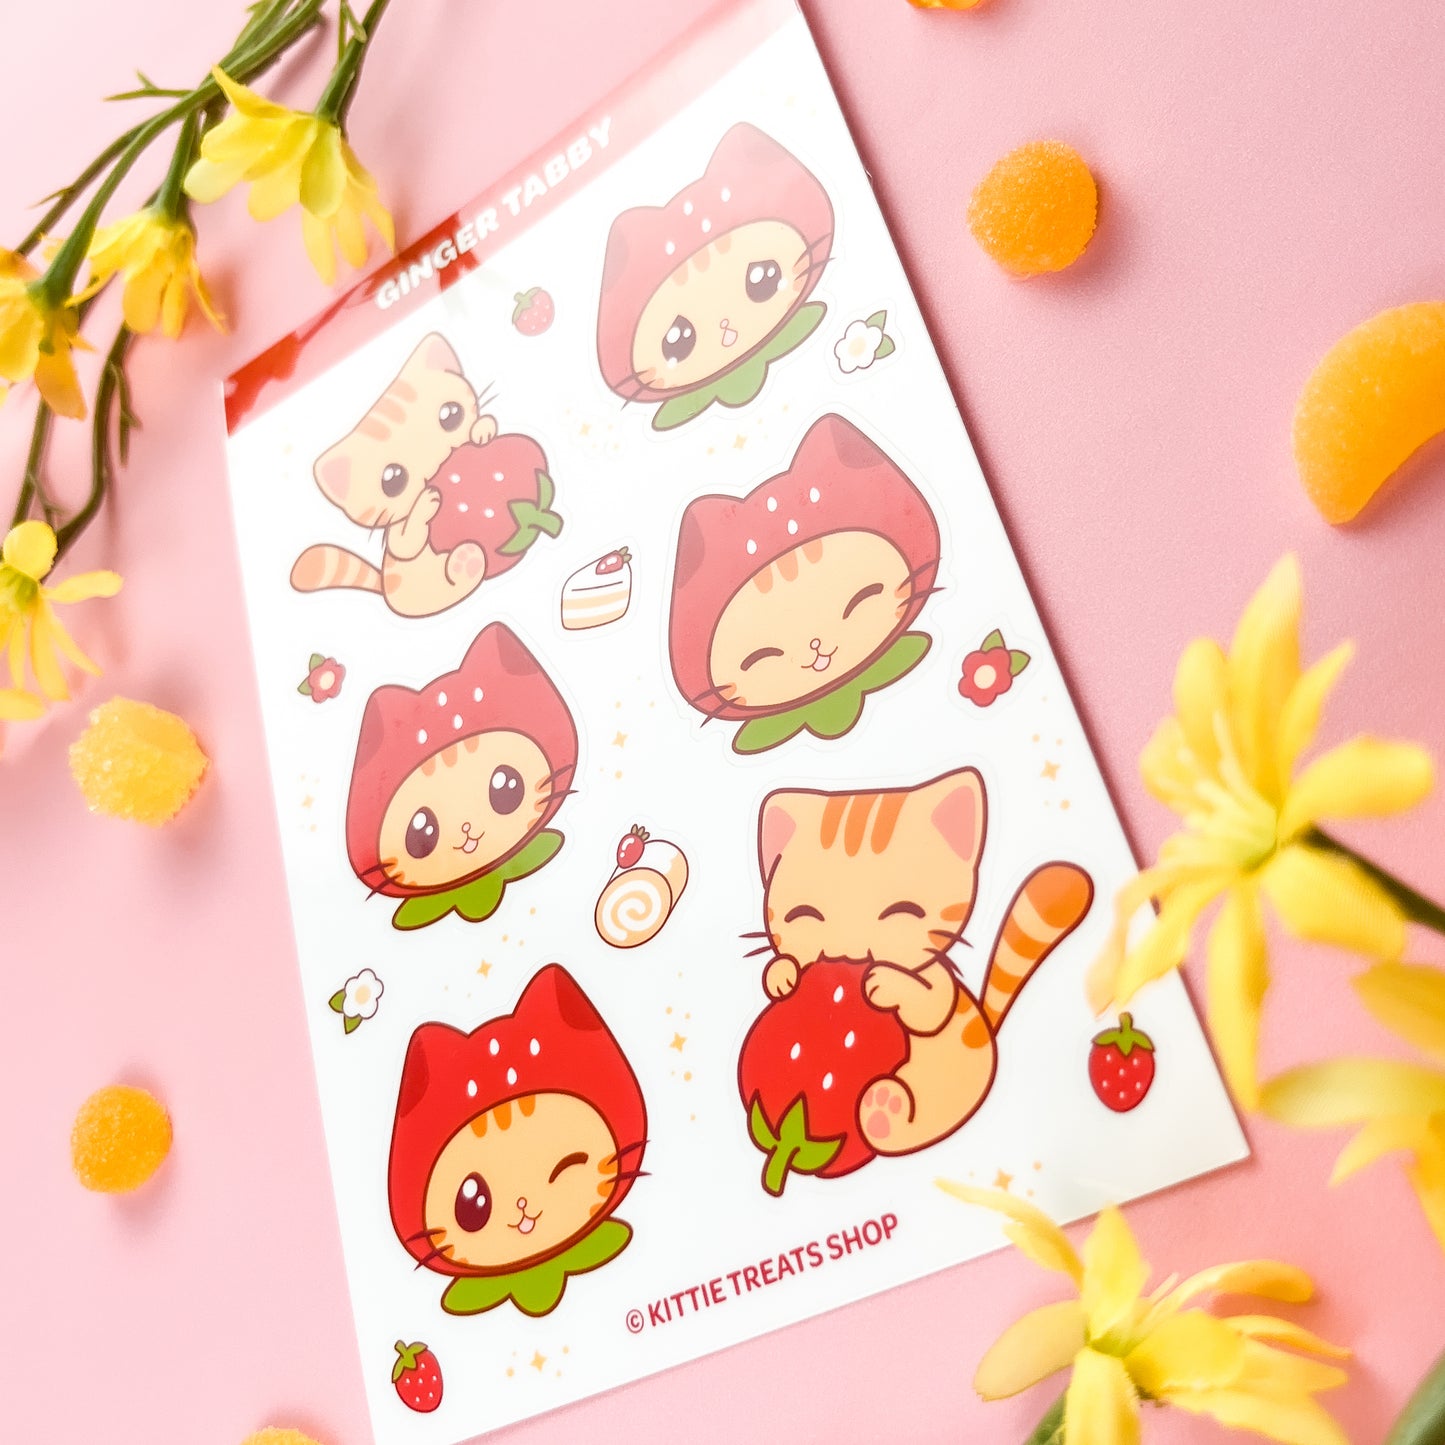 Ginger Tabby Cat Sticker Sheet